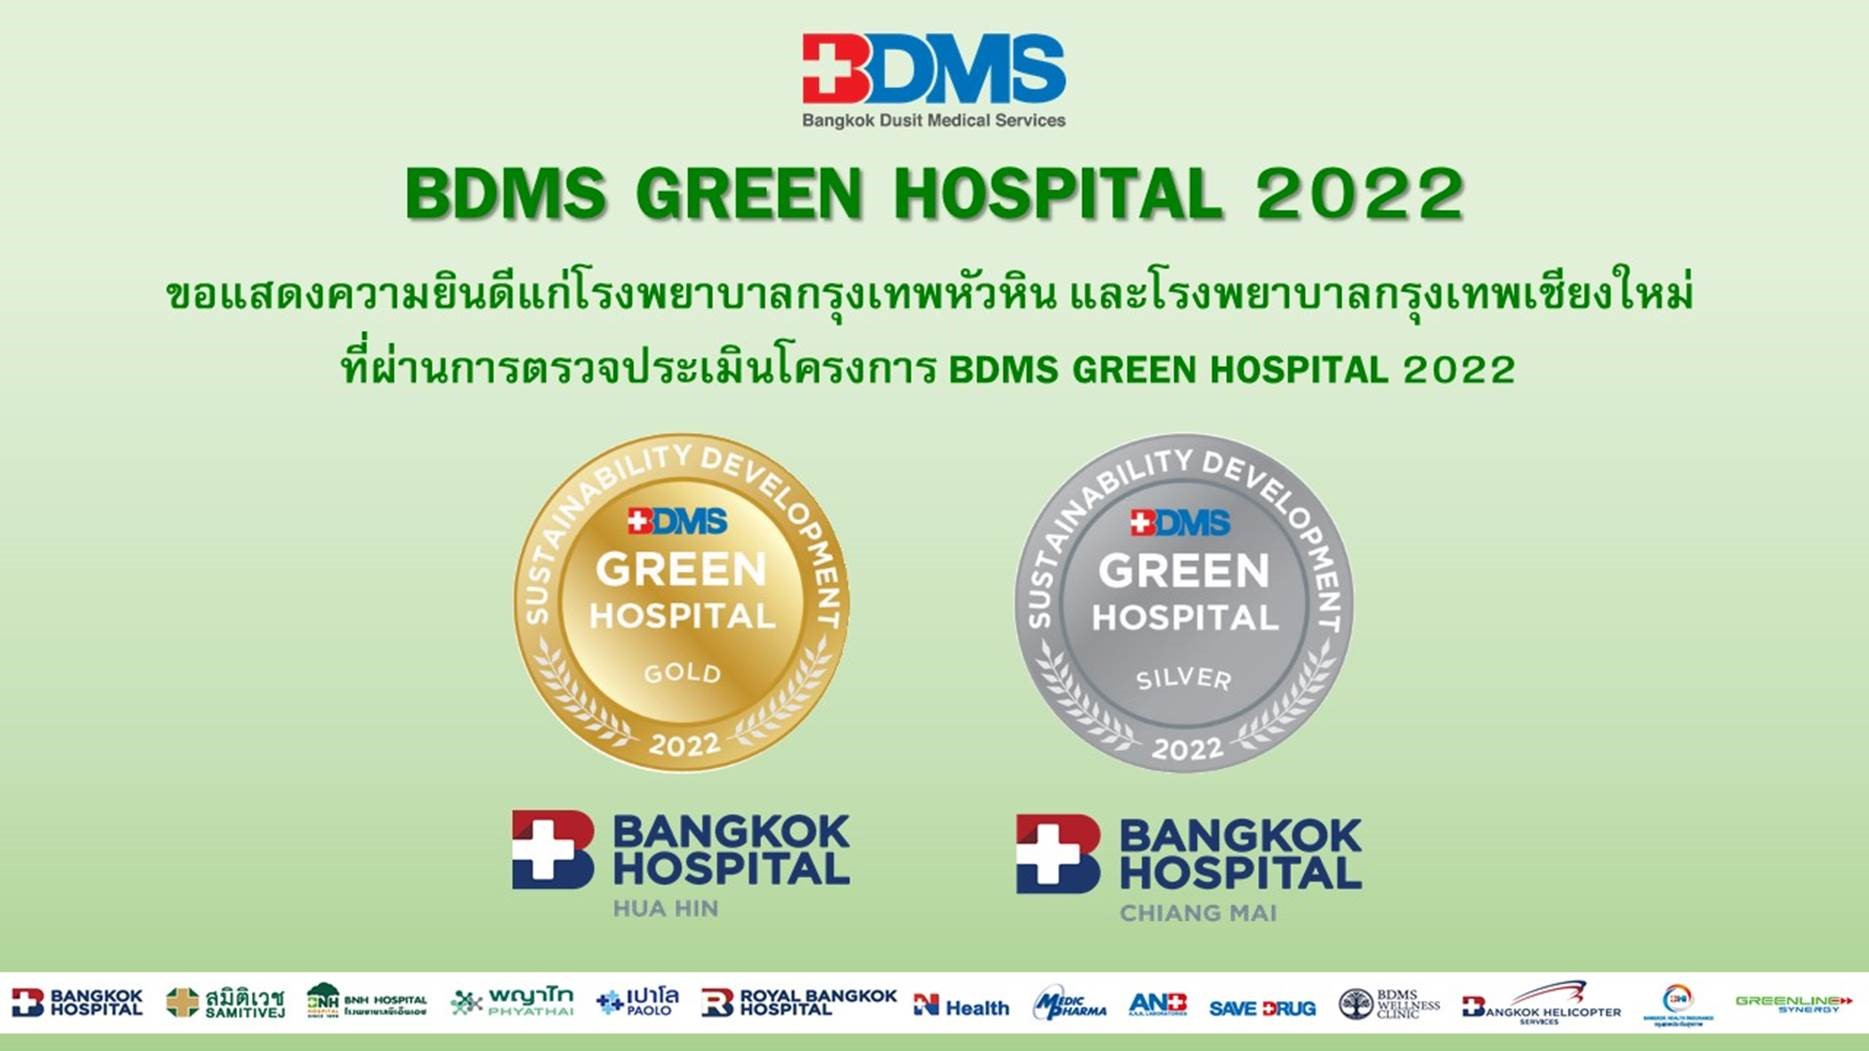 โรงพยาบาลเชียงใหม่-BDMS GREEN HOSPITAL